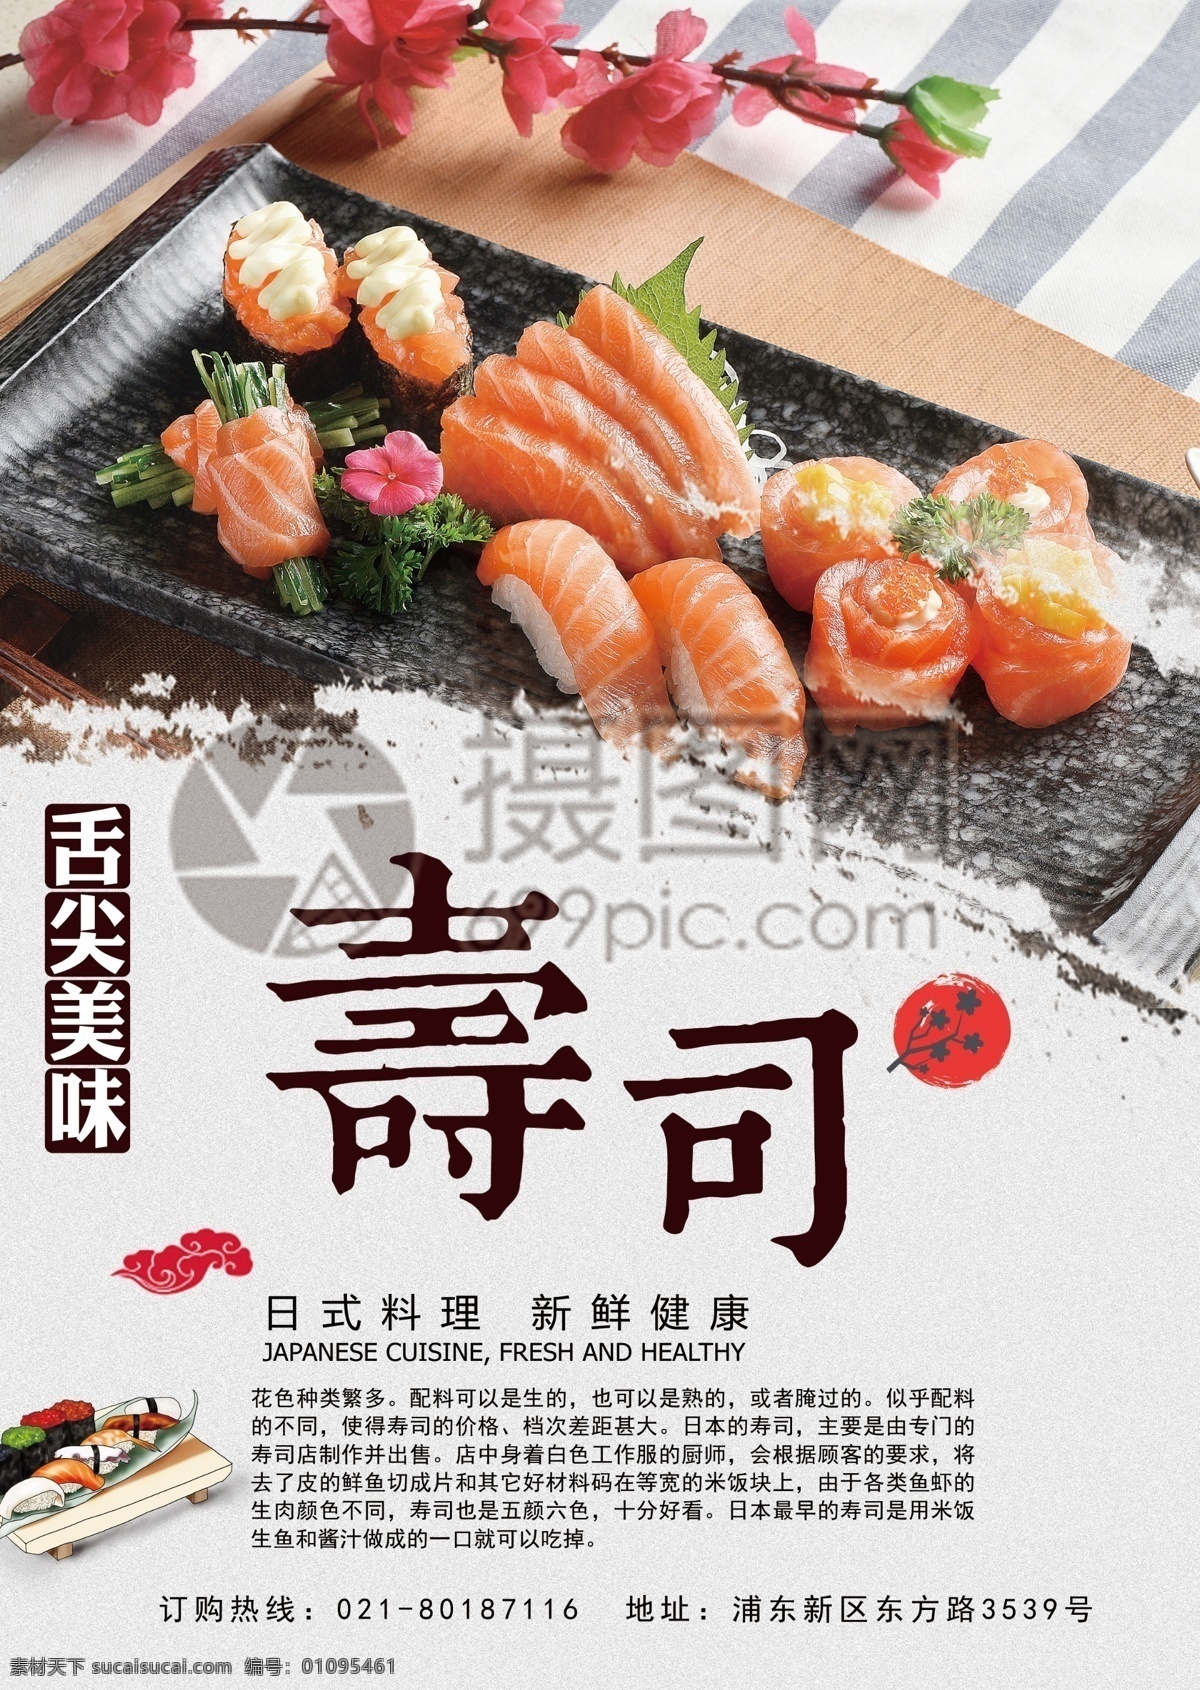 寿司 促销 宣传单 日式 日本料理 和风 海苔 米饭 精致 美食 美味 点心 主食 促销宣传 宣传单设计 简约 简洁 大气 活力